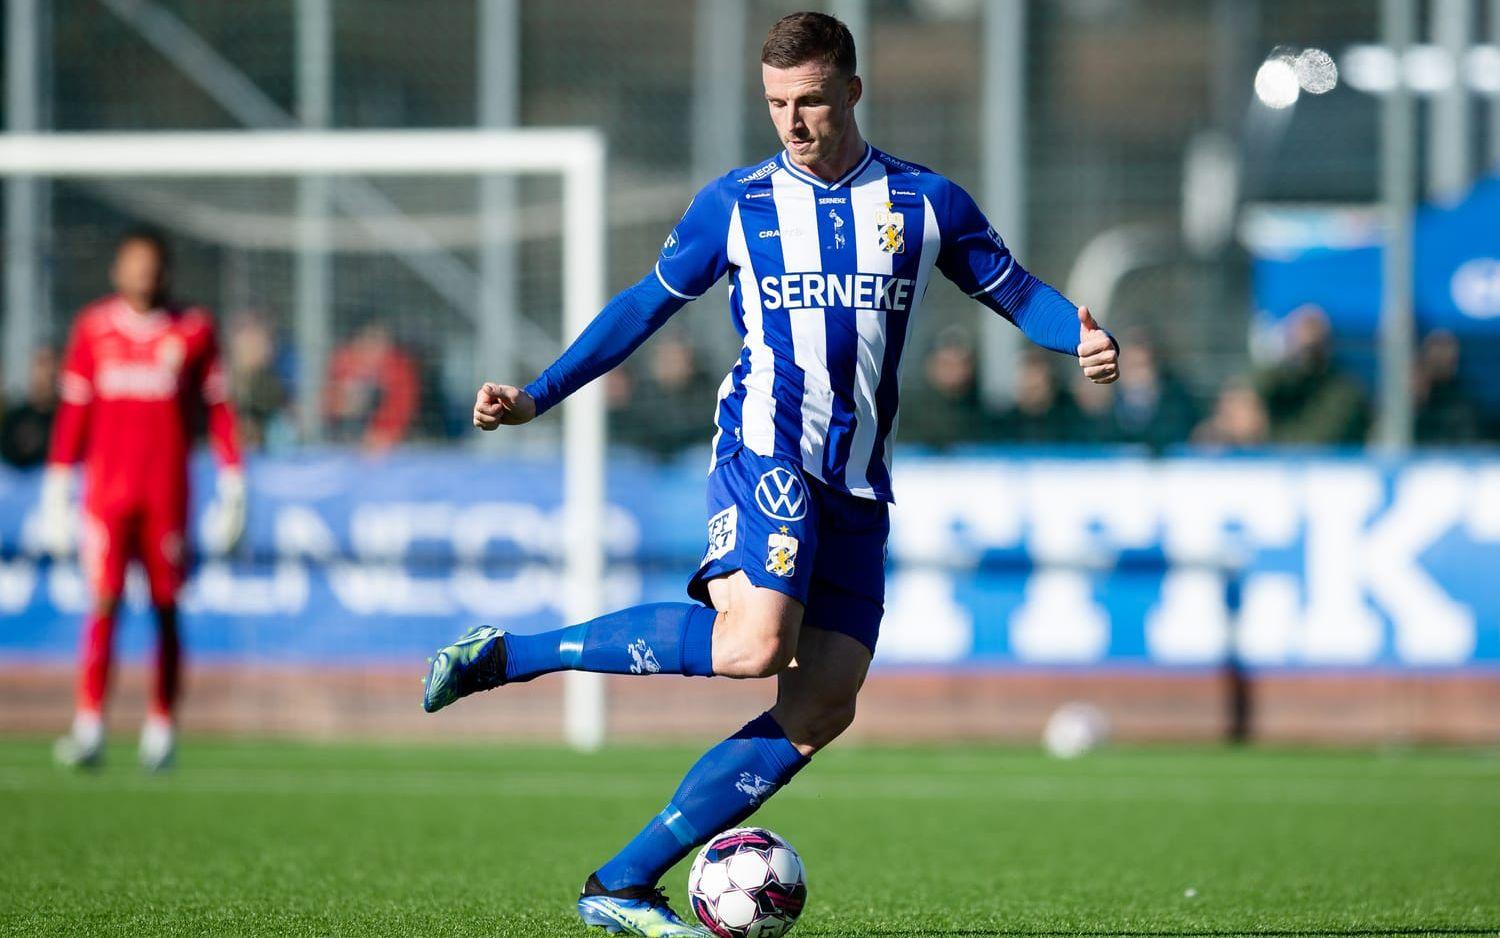 Calle Johansson säljs av IFK Göteborg till Tyskland. 